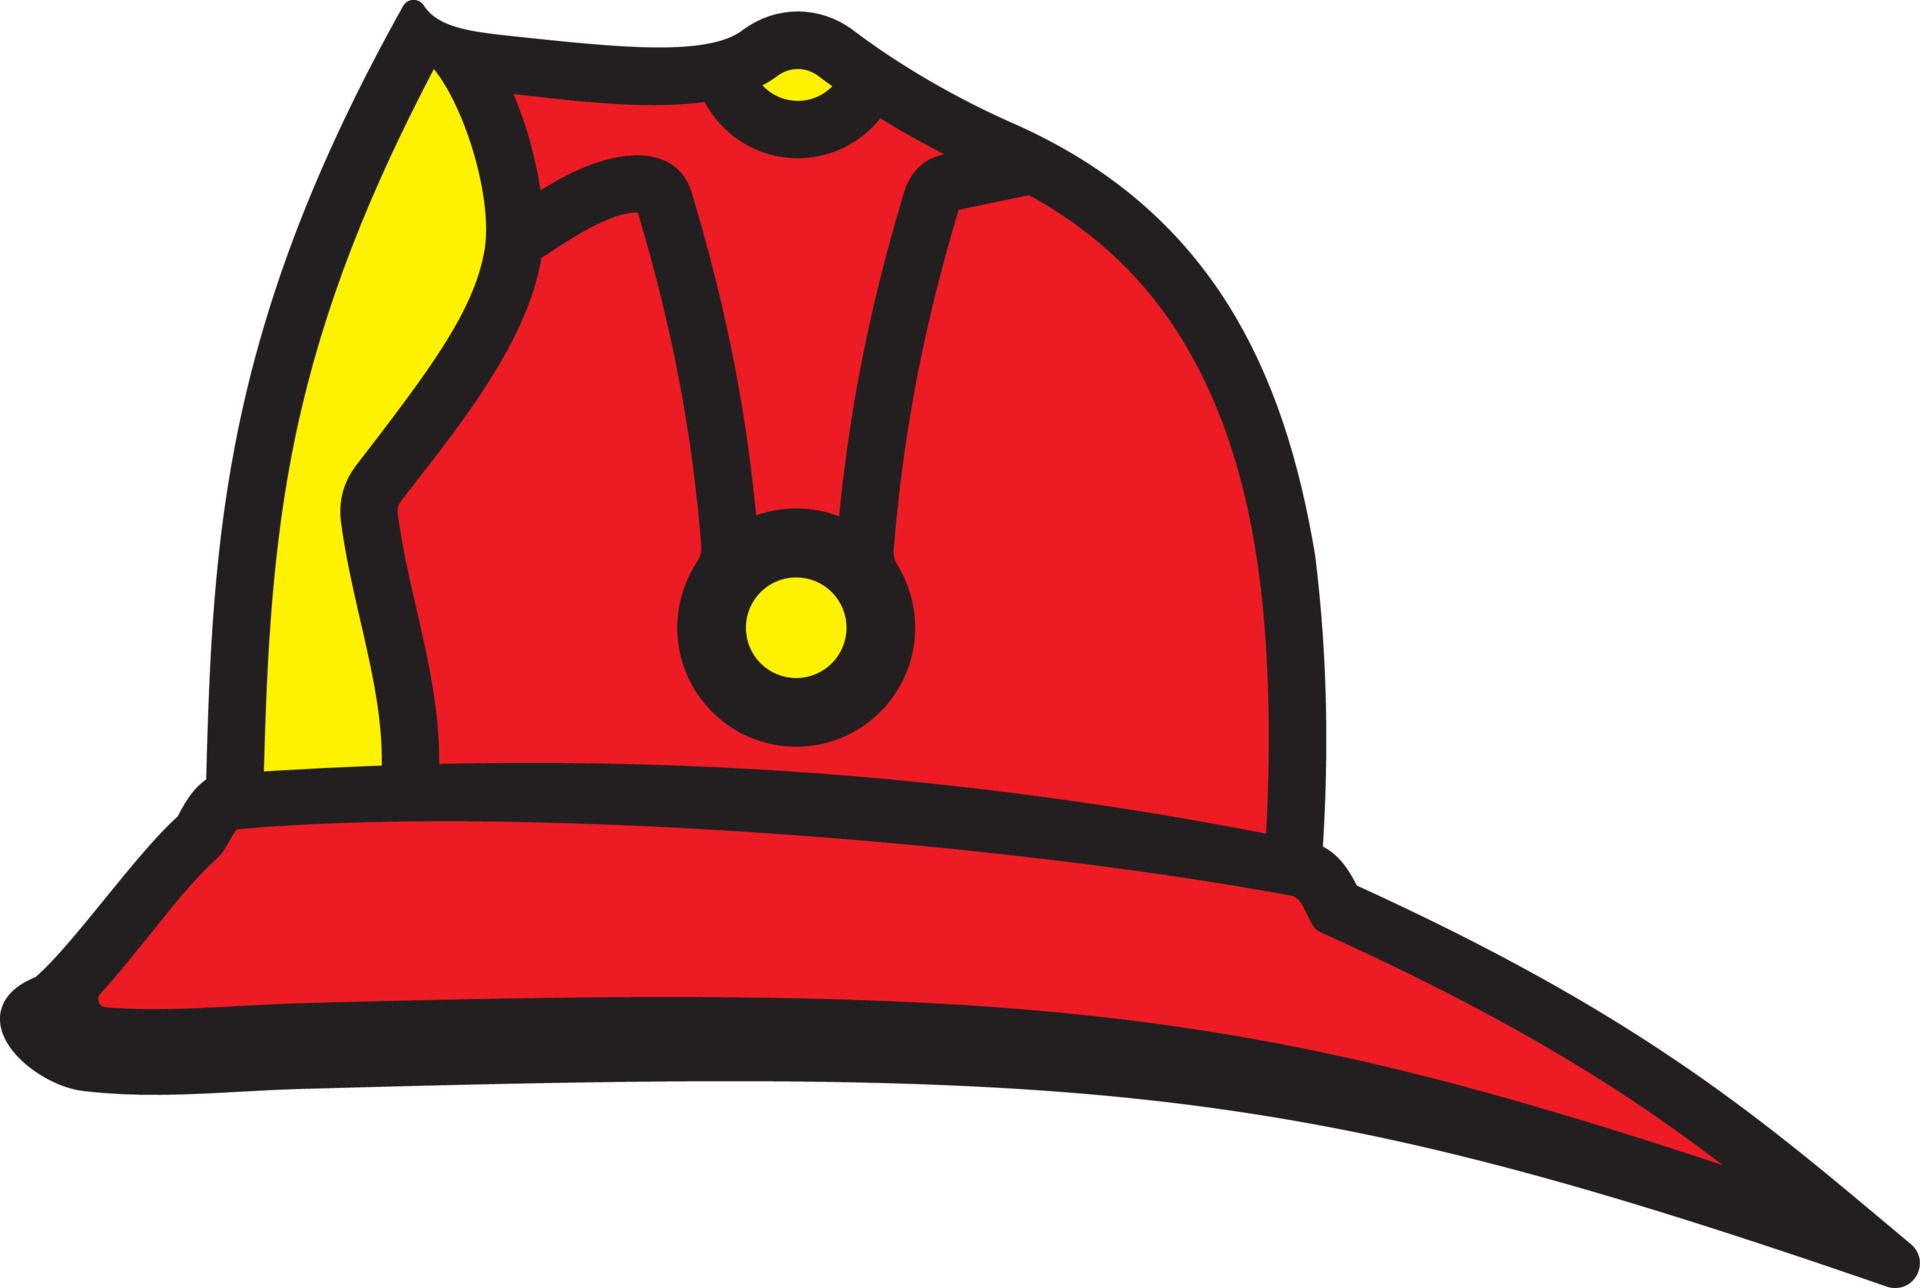 casco para un icono de bombero, estilo de dibujos animados 14577930 Vector  en Vecteezy